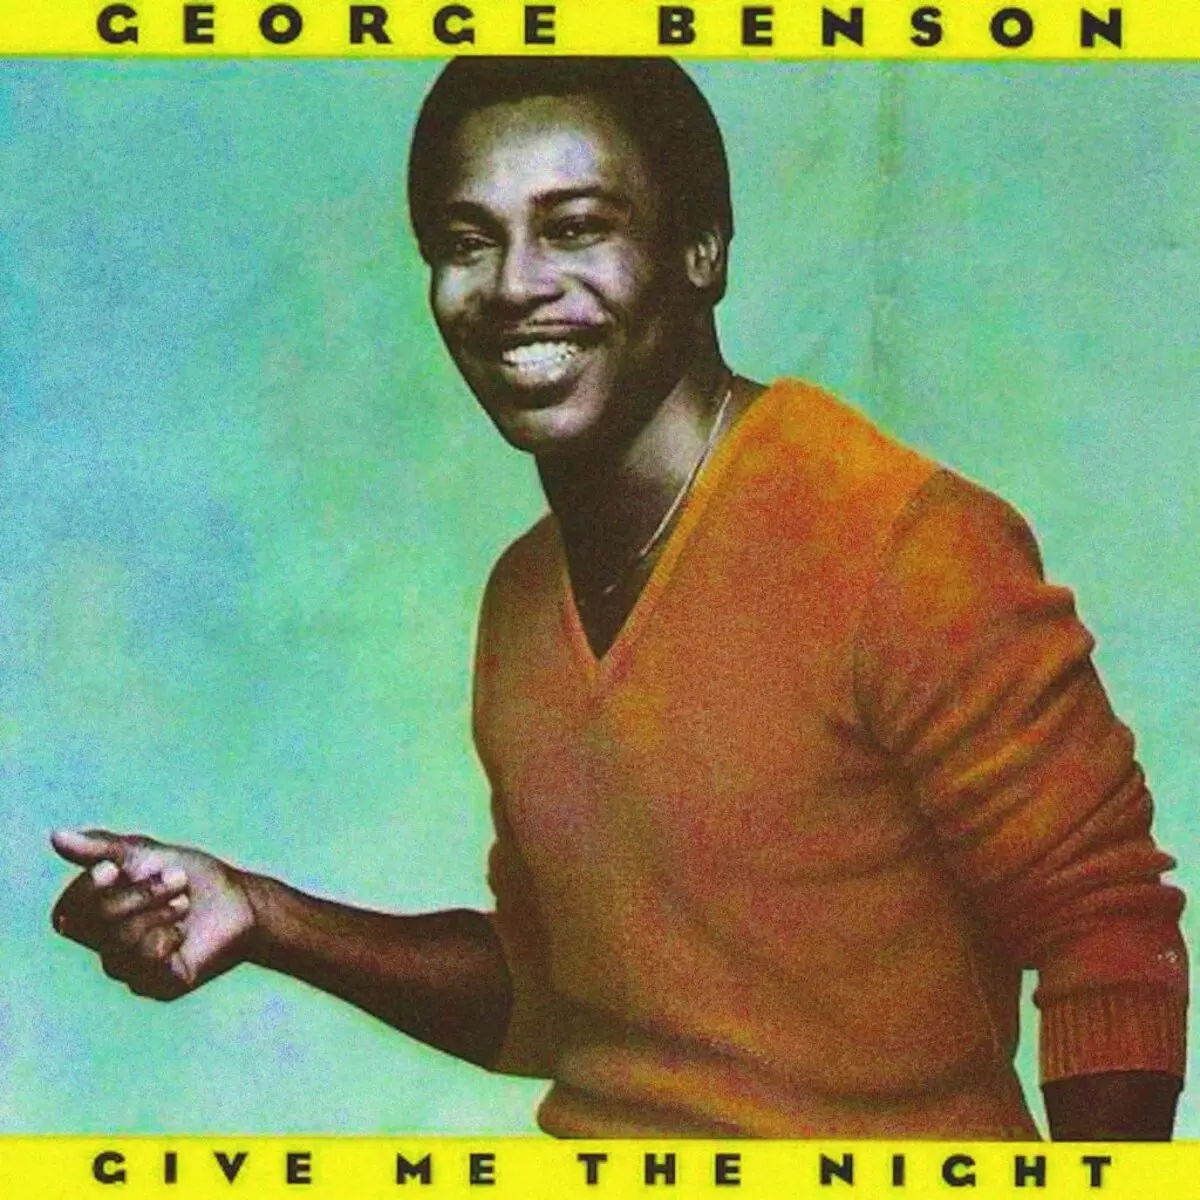 मला रात्री (1 9 80) - जॉर्ज बेन्सन - सर्व अल्बम बद्दल ...